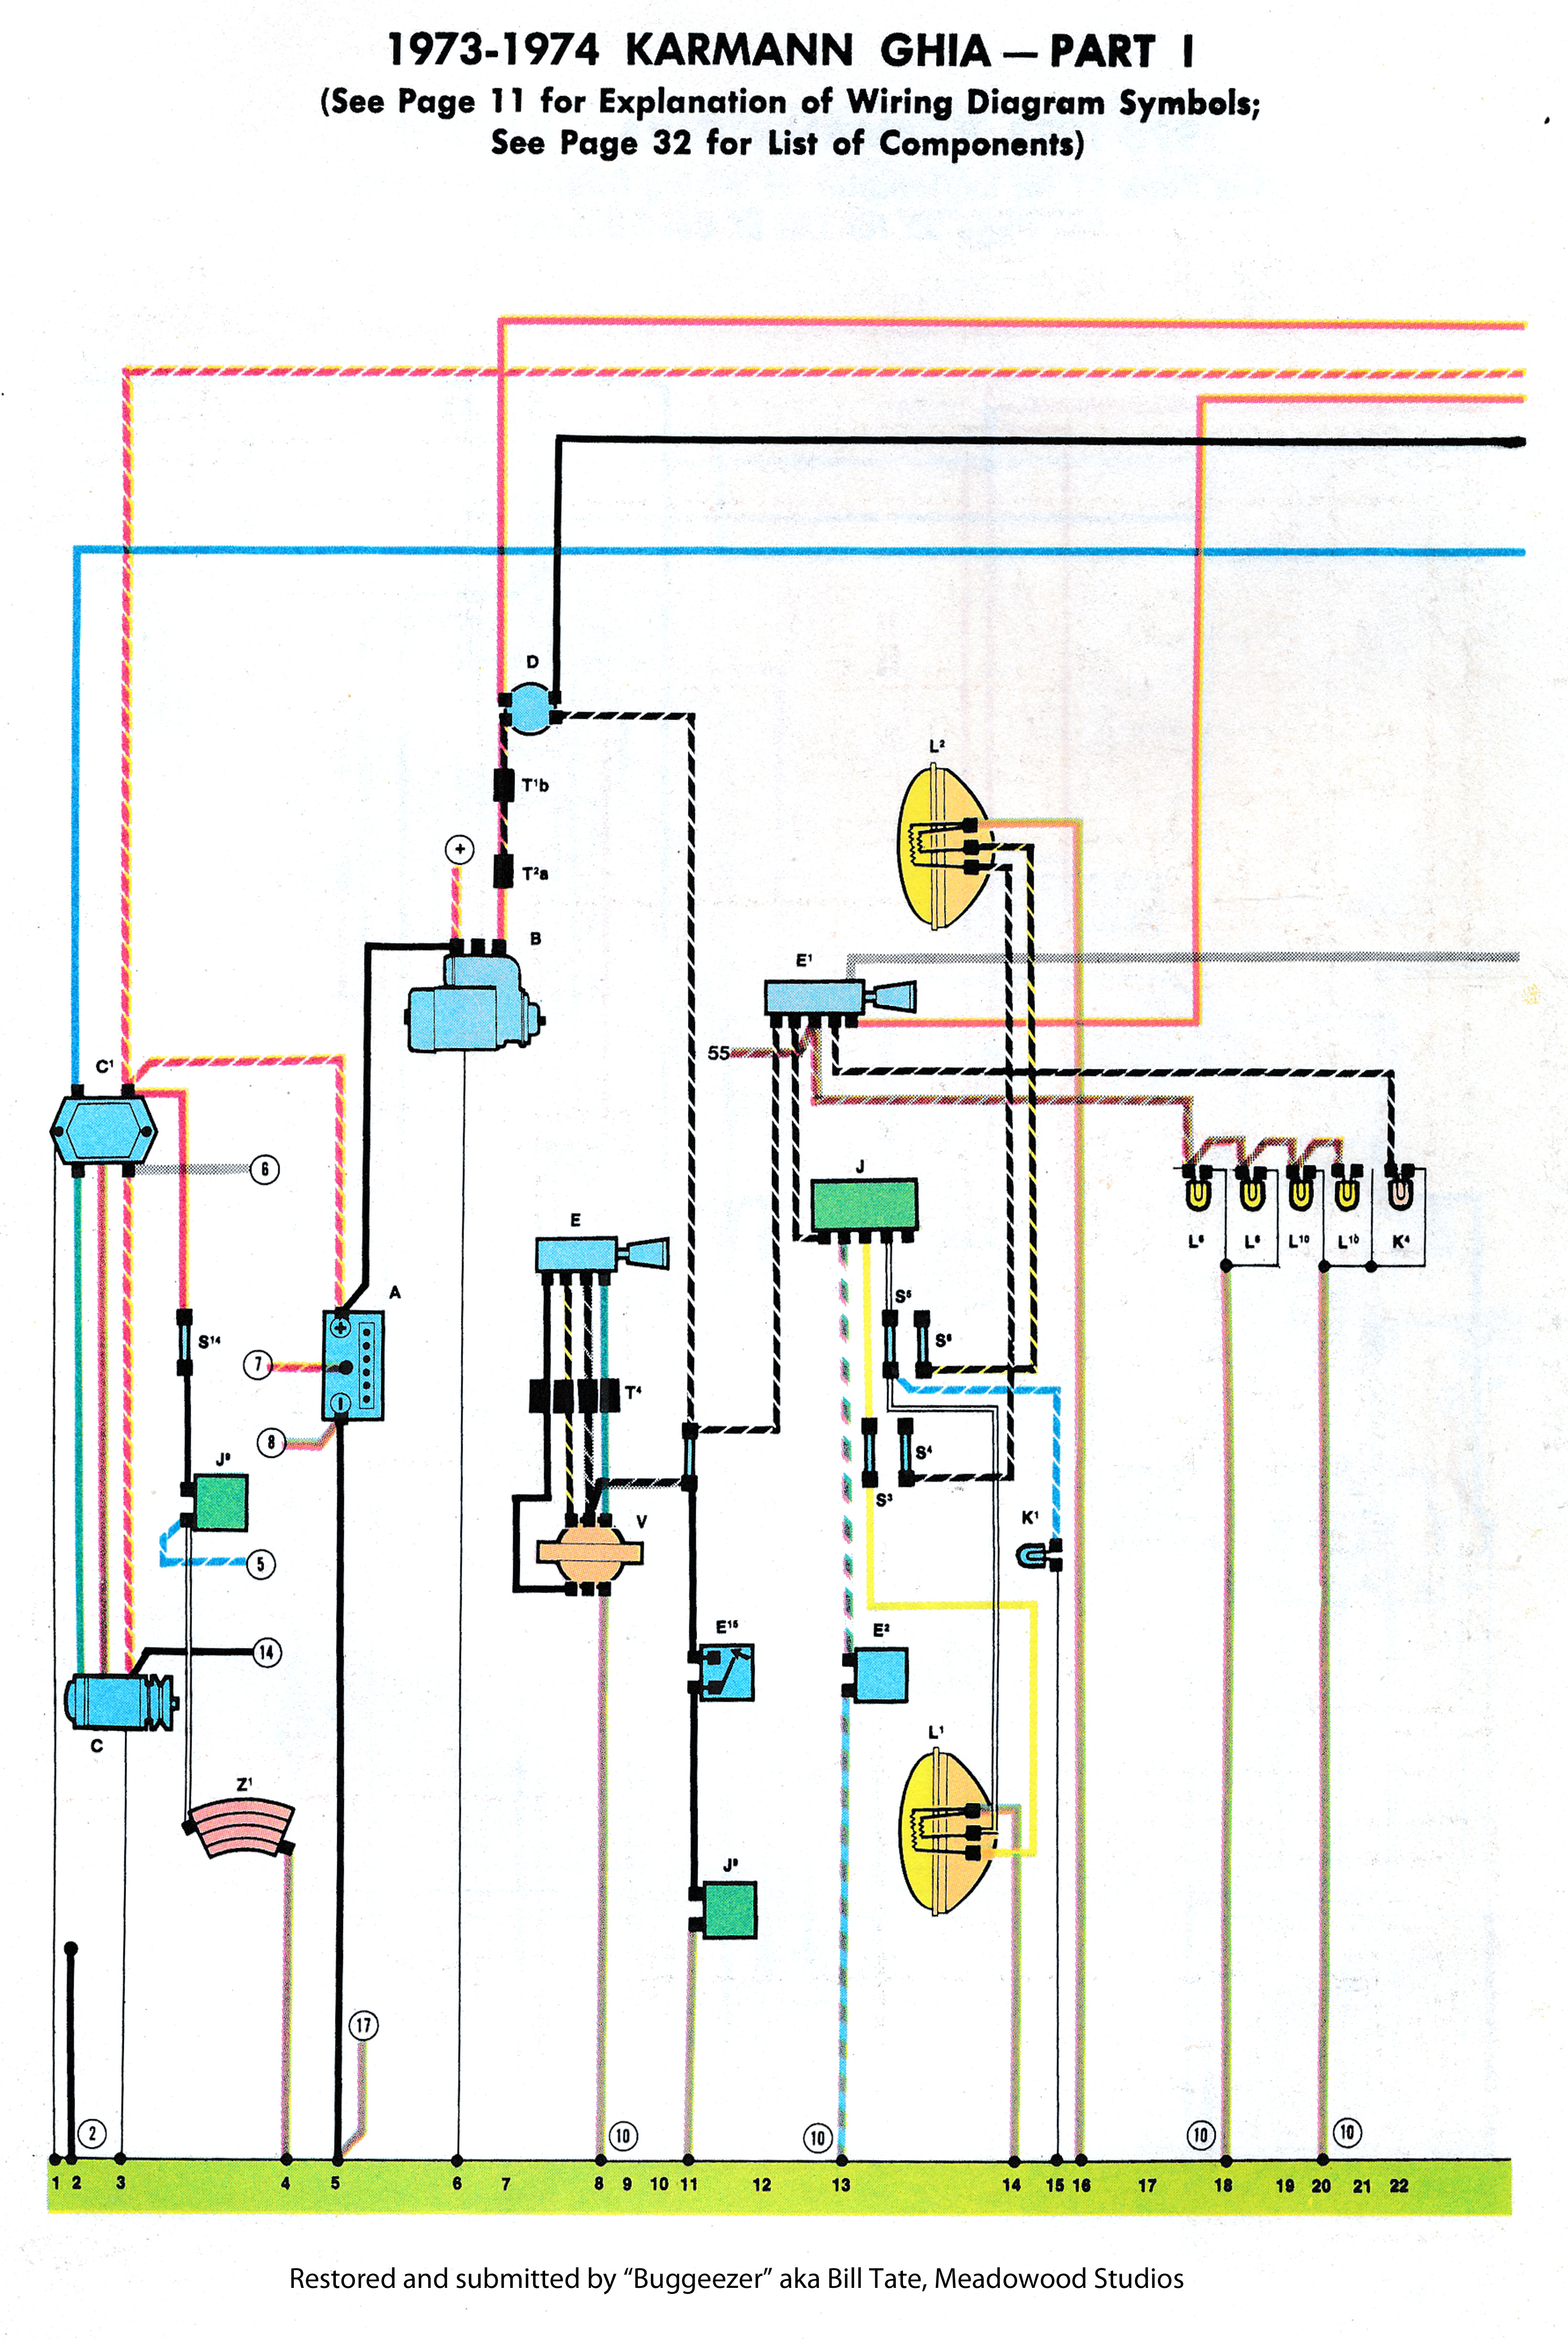 1969 karmann ghia wiring diagram